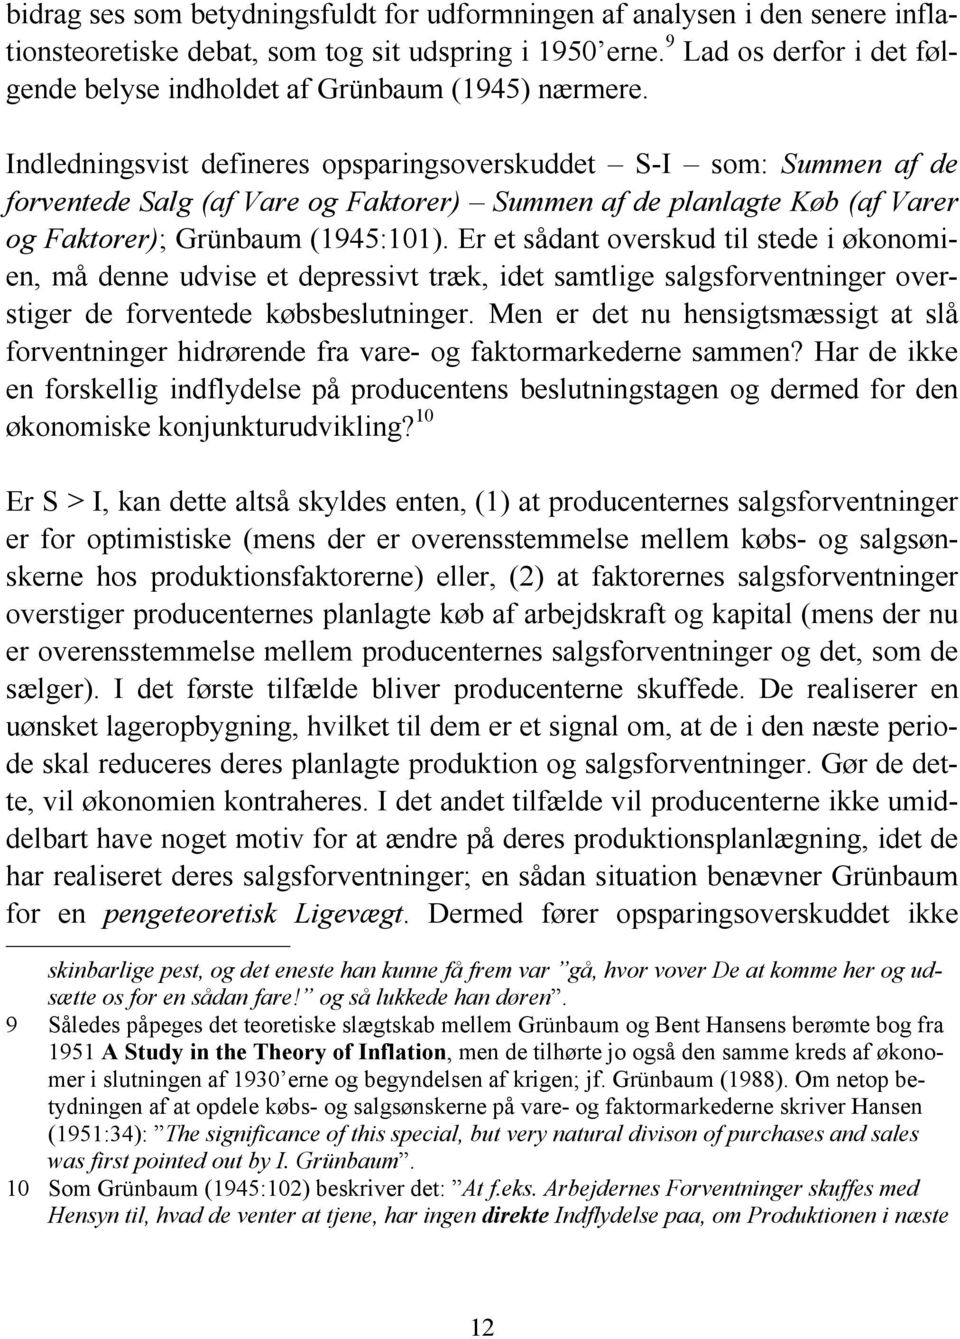 Indledningsvist defineres opsparingsoverskuddet S-I som: Summen af de forventede Salg (af Vare og Faktorer) Summen af de planlagte Køb (af Varer og Faktorer); Grünbaum (1945:101).